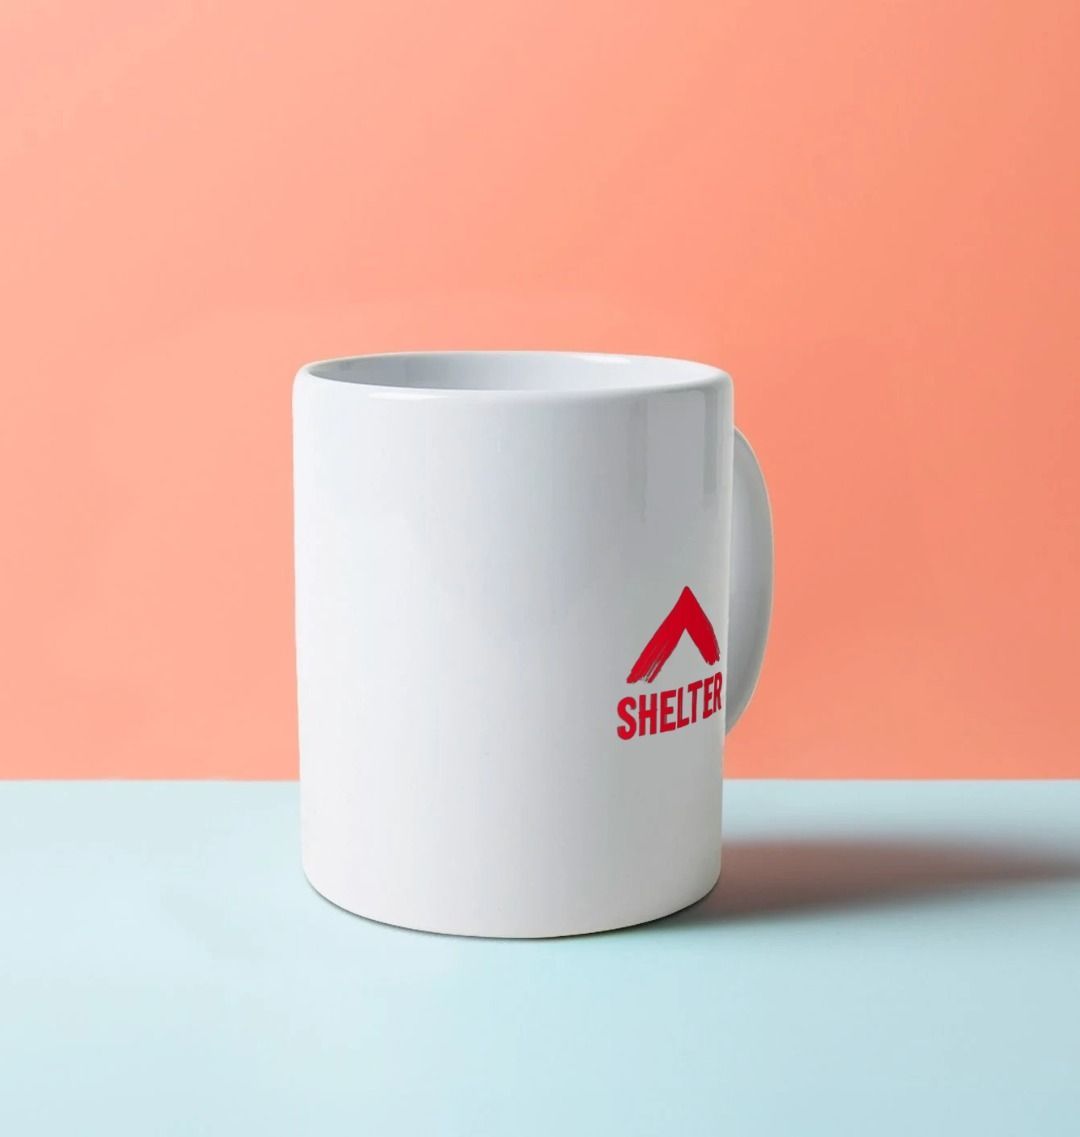 White mug with the Shelter logo